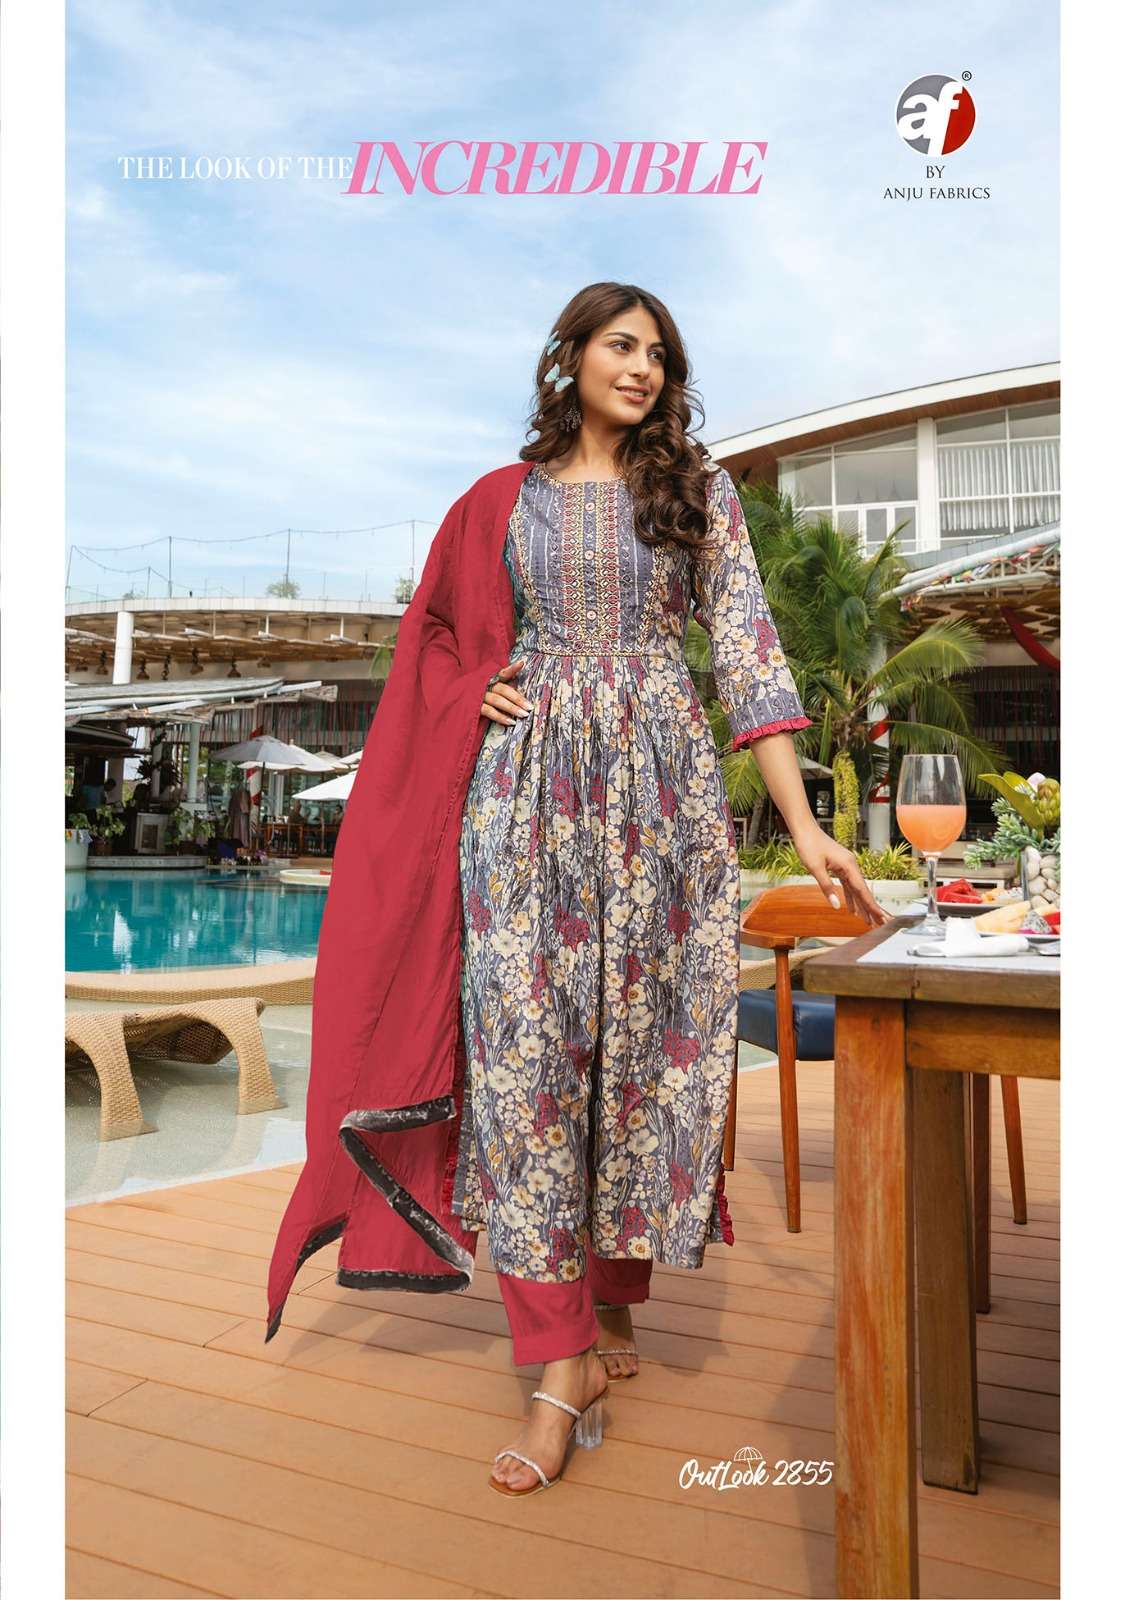 anju fabrics outlook 2851-2856 series stylish look designer kurtis catalogue manufacturer surat 